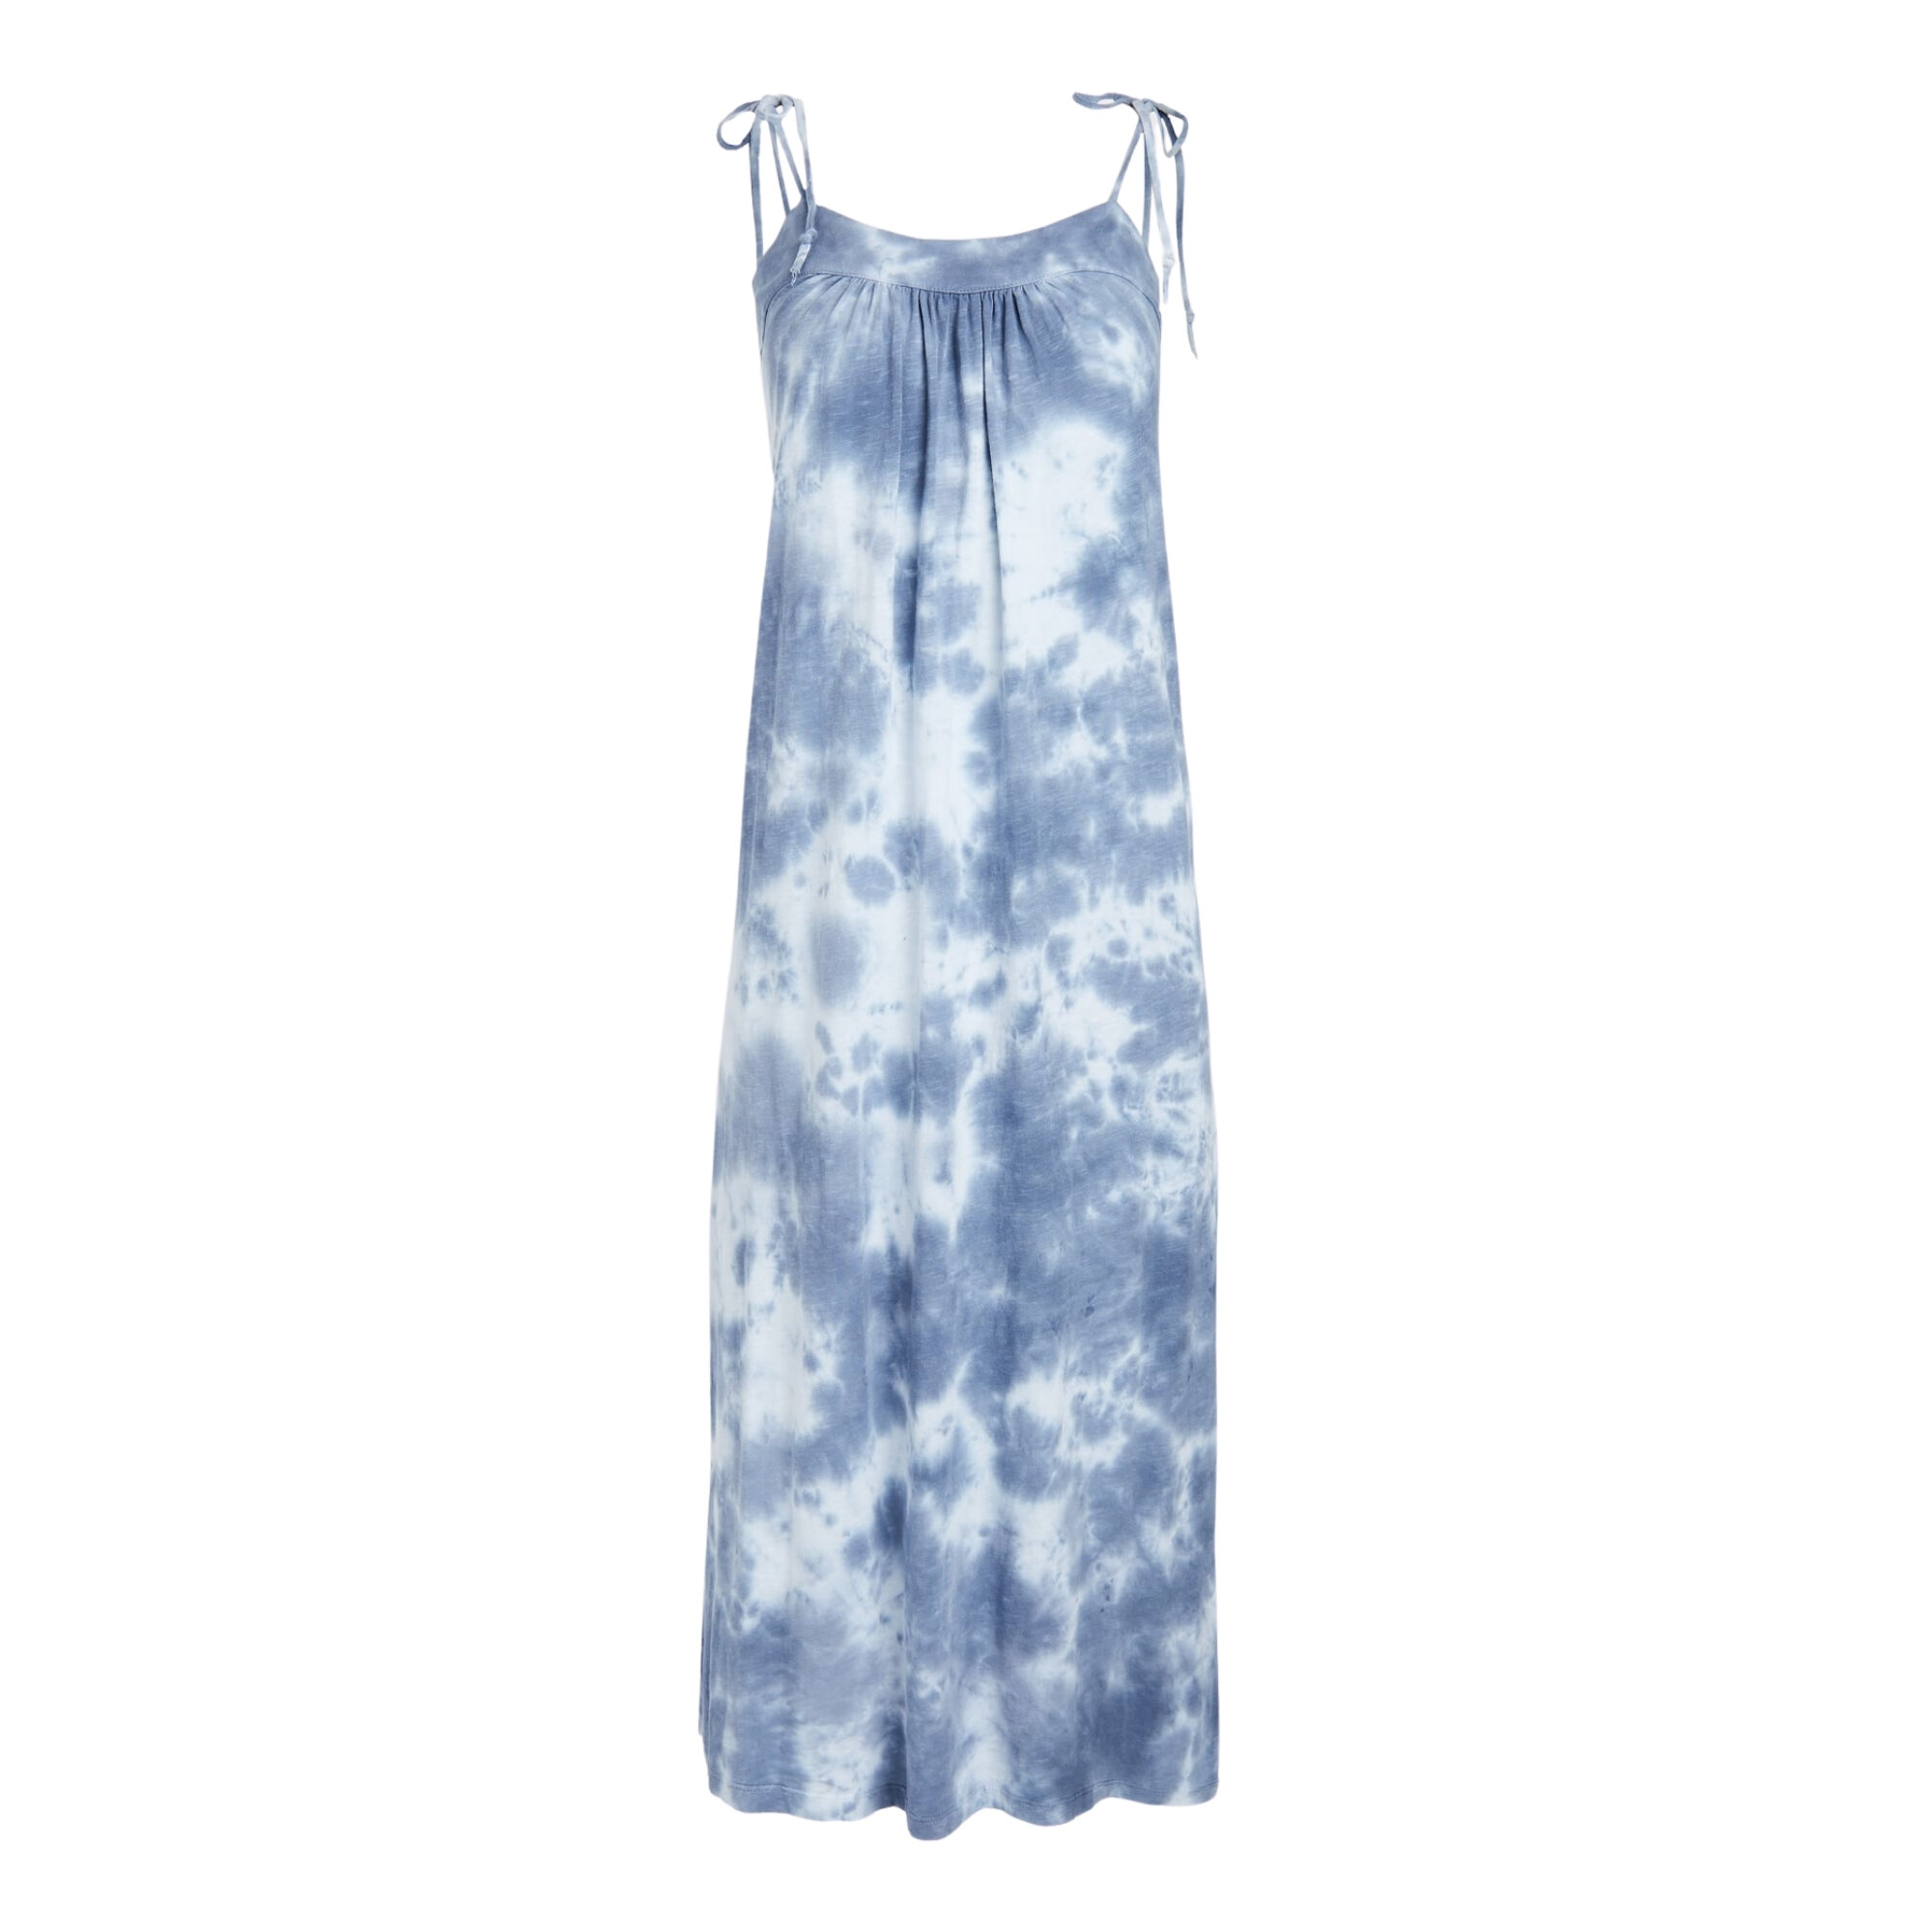 Slit Midi Dress with Tie Straps, Shopbop, $165 (machine wash)